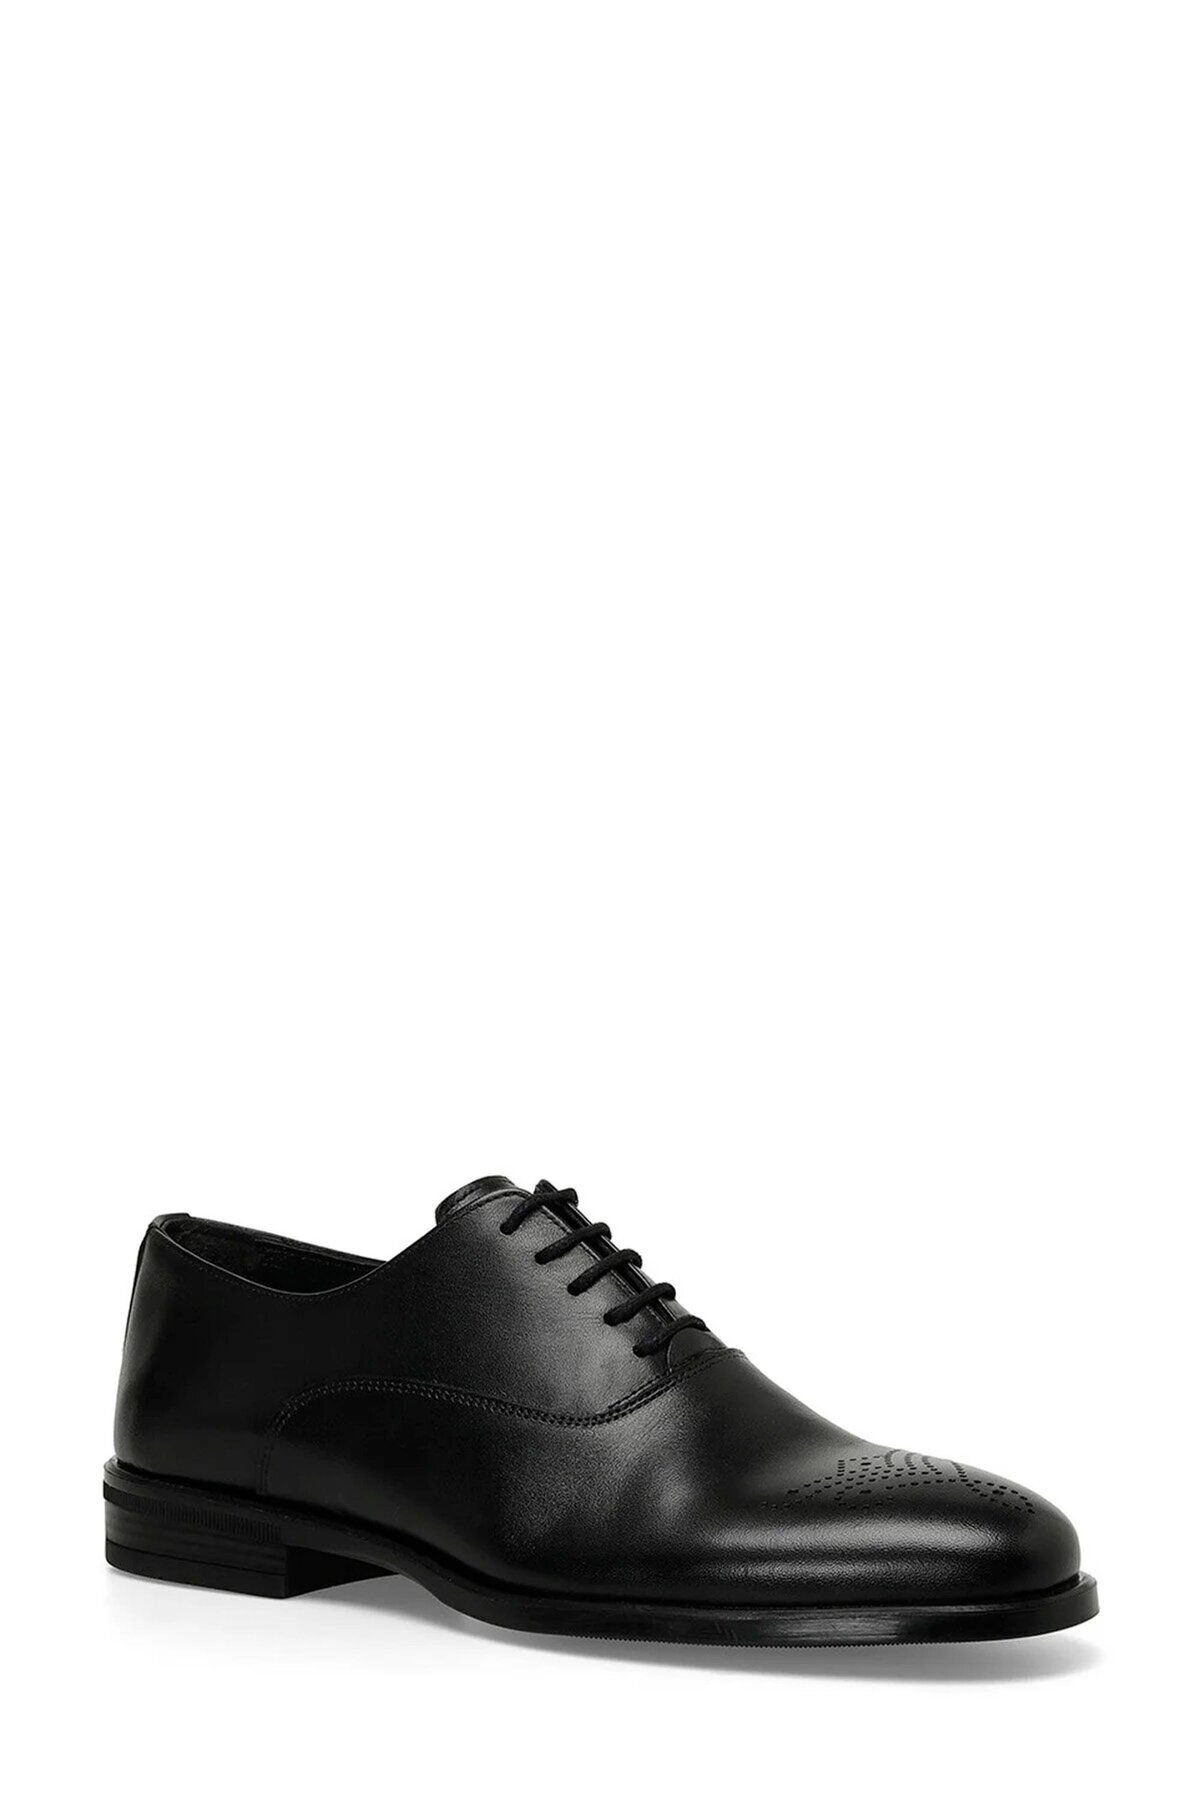 İnci Inci A10156841408010 4p Peony 4fx Siyah Erkek Klasik Ayakkabı